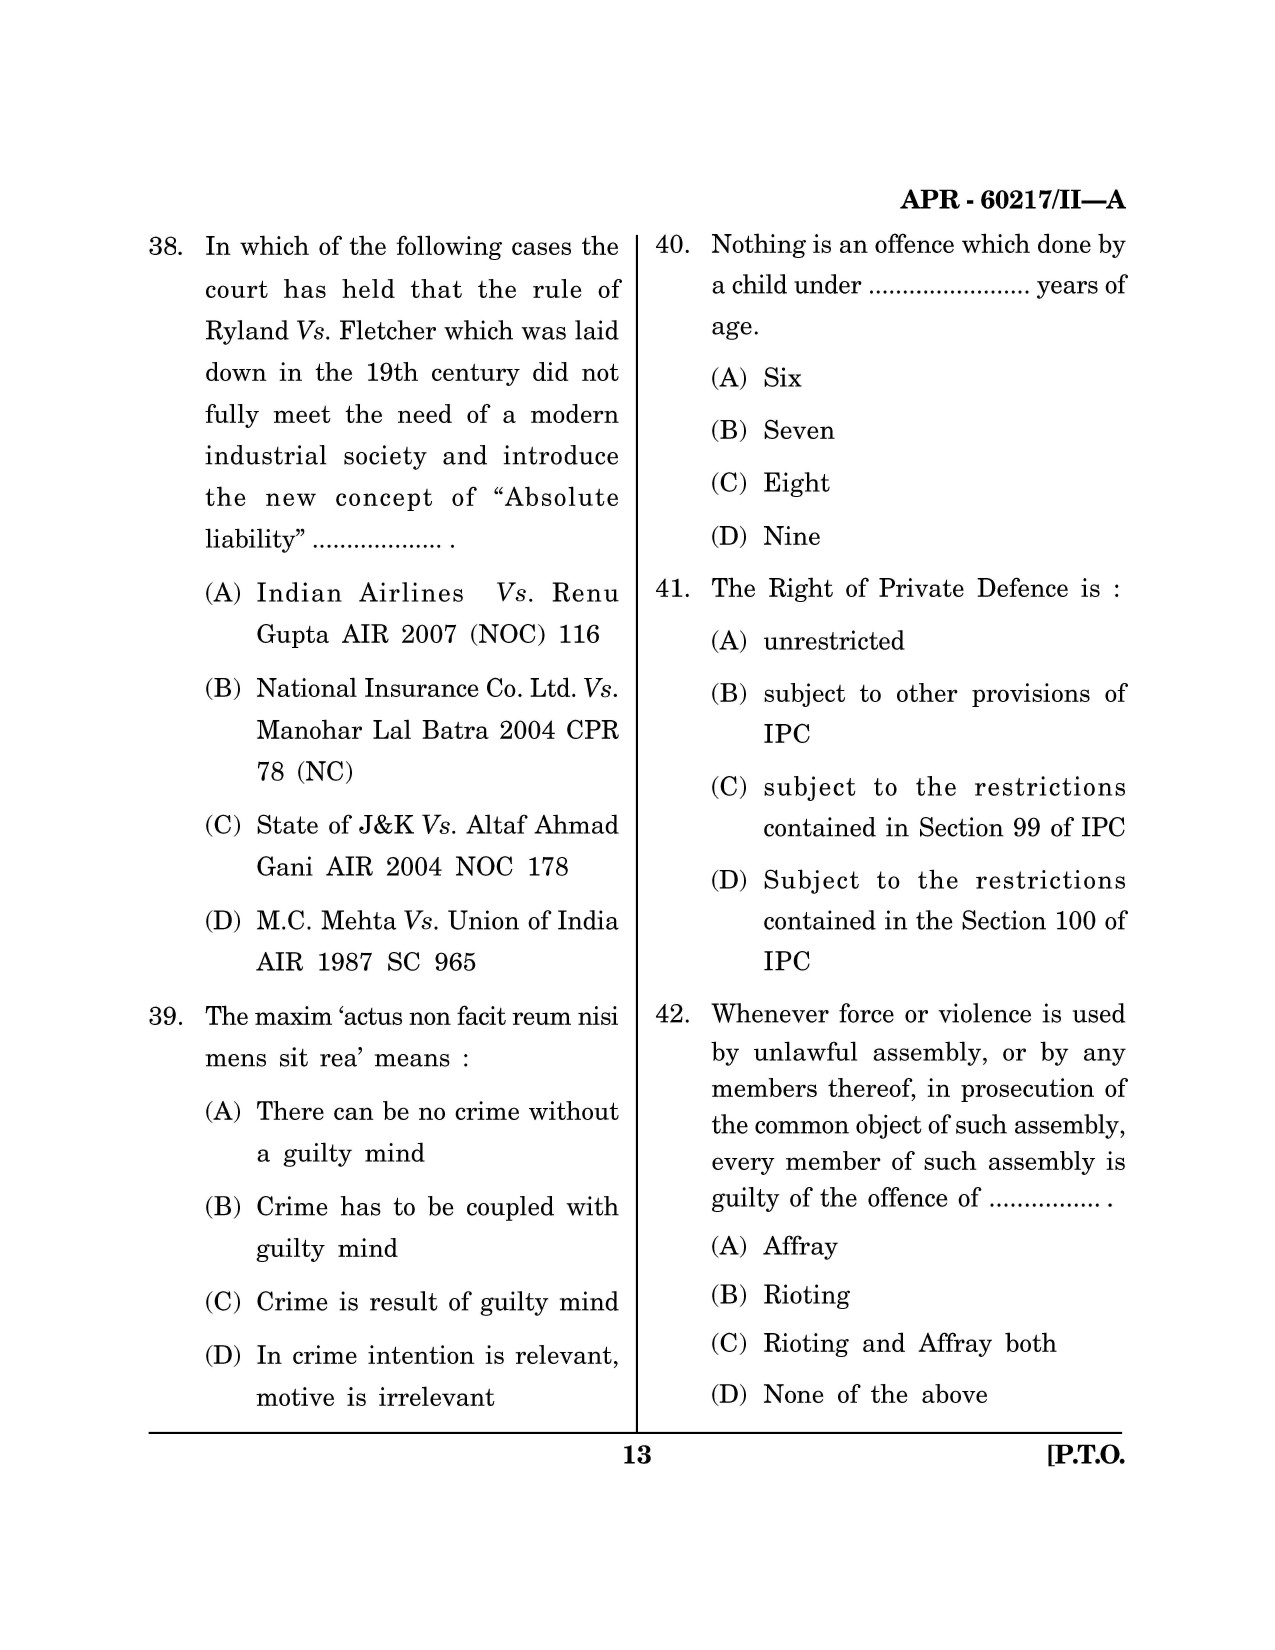 Maharashtra SET Law Question Paper II April 2017 12